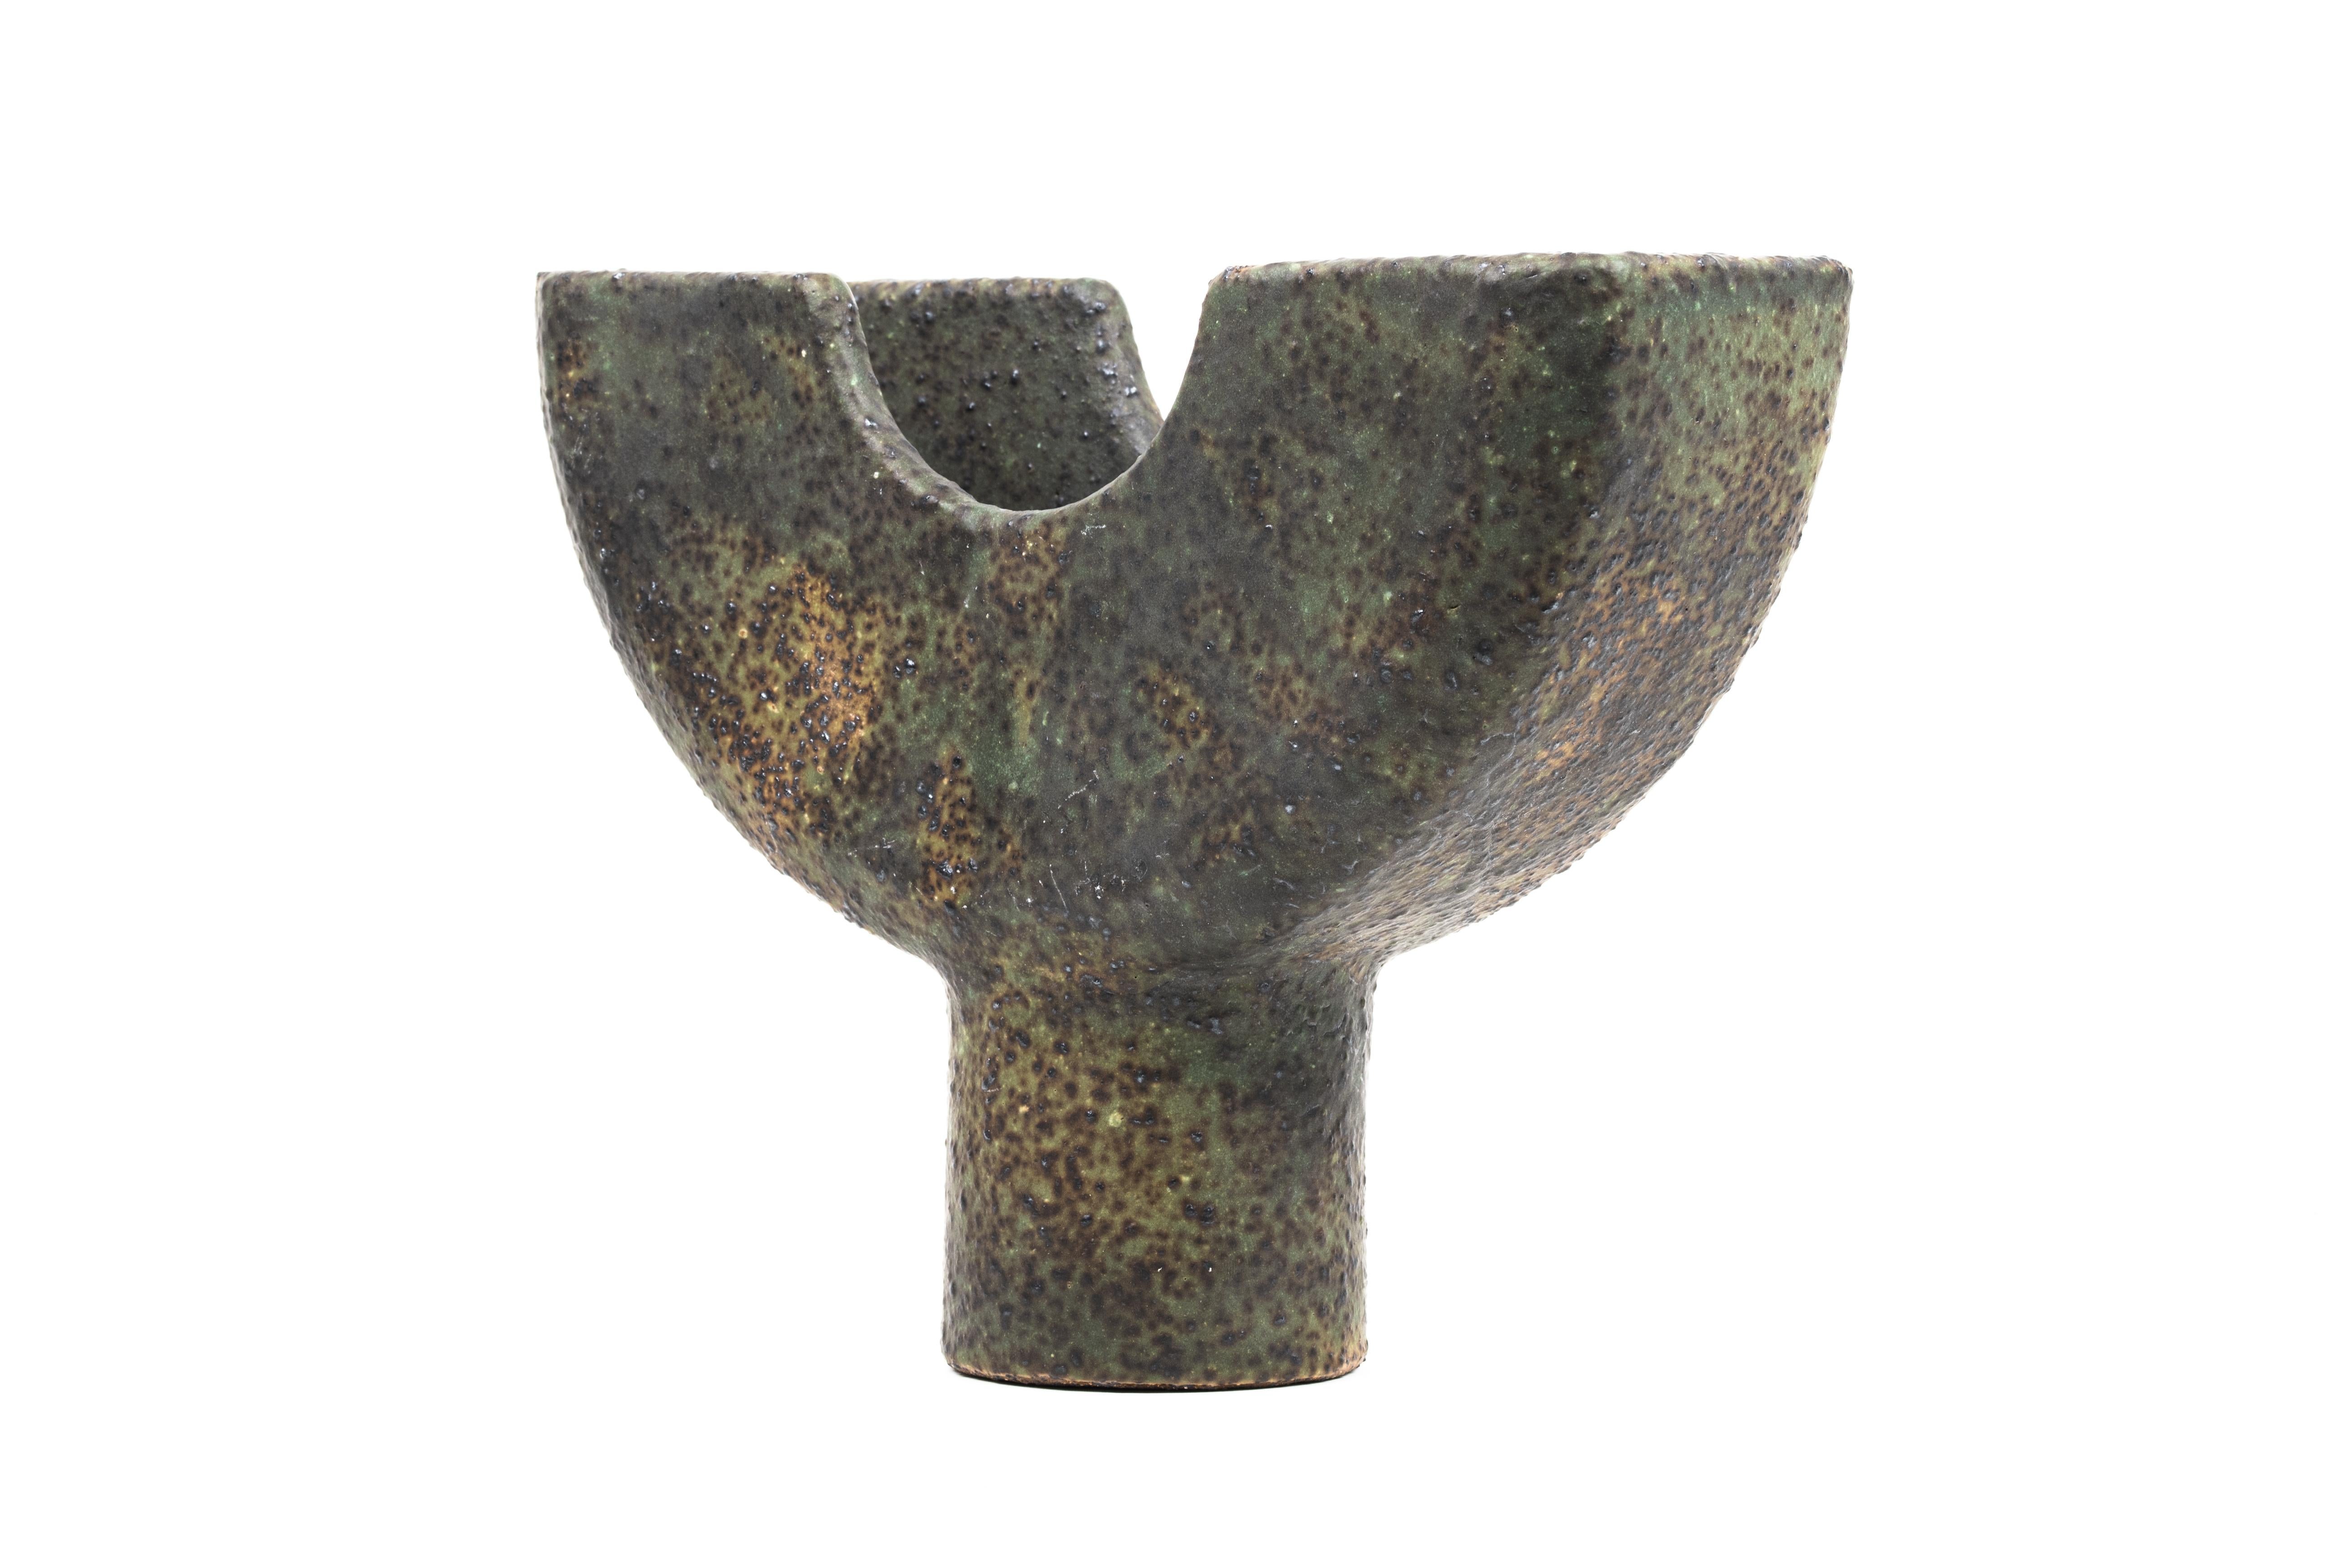 Cu-Gefäß von Studio Cúze
Abmessungen: T 8 x B 23 x H 19,5 cm
MATERIAL: Keramik, Kupfer

Das Cu-Gefäß ist ein handgefertigtes Stück zum Aufbewahren und Sammeln von Räucherstäbchen. Das Stück verdankt seine einzigartige Farbe der Verwendung von